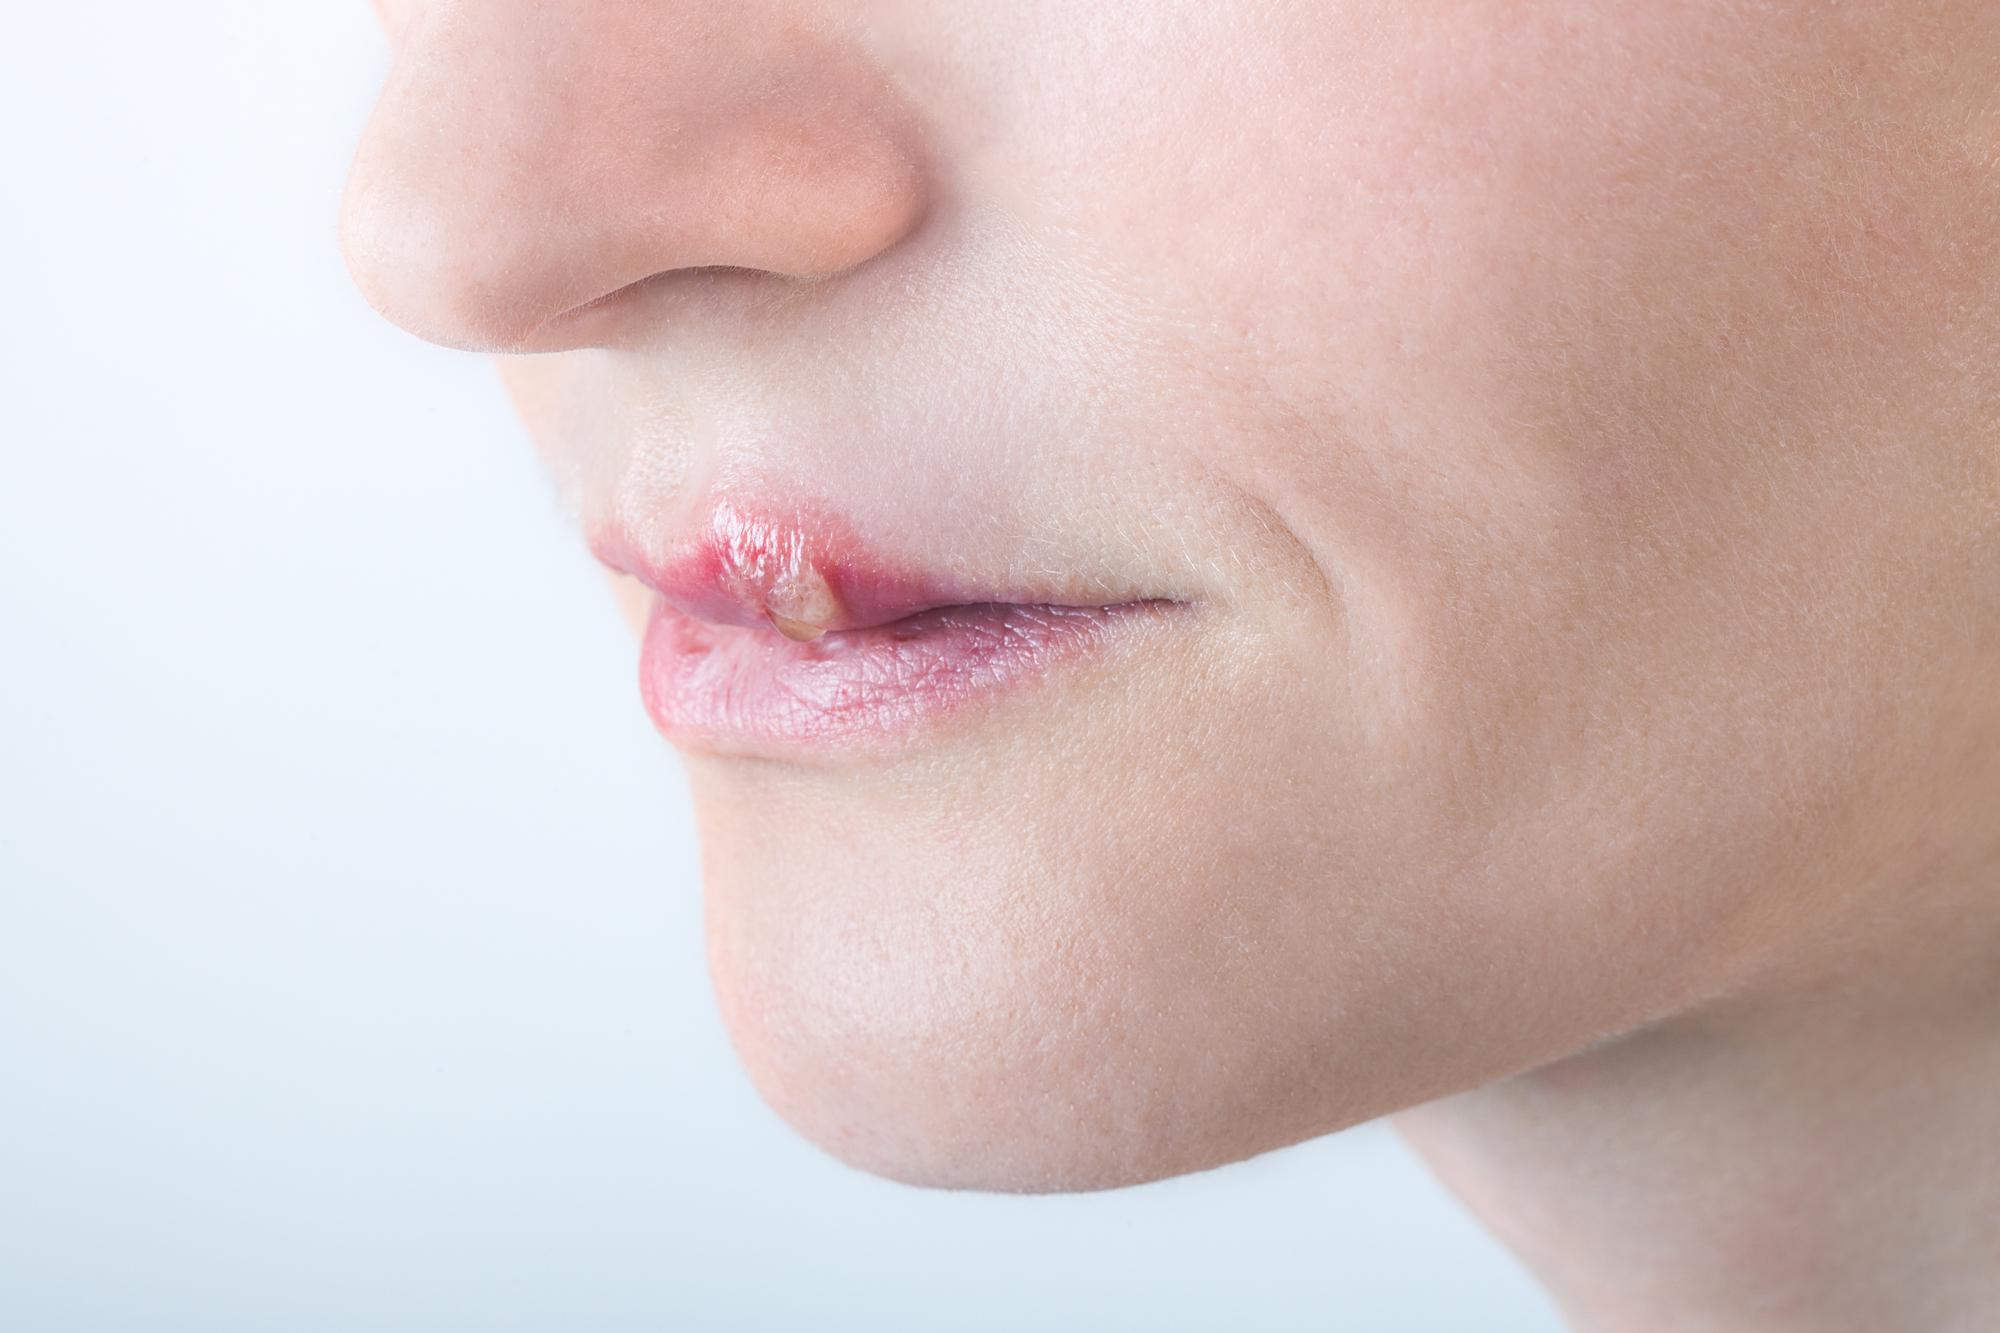 口唇ヘルペスはうつる 感染経路 受診するべき病院 予防法をチェック